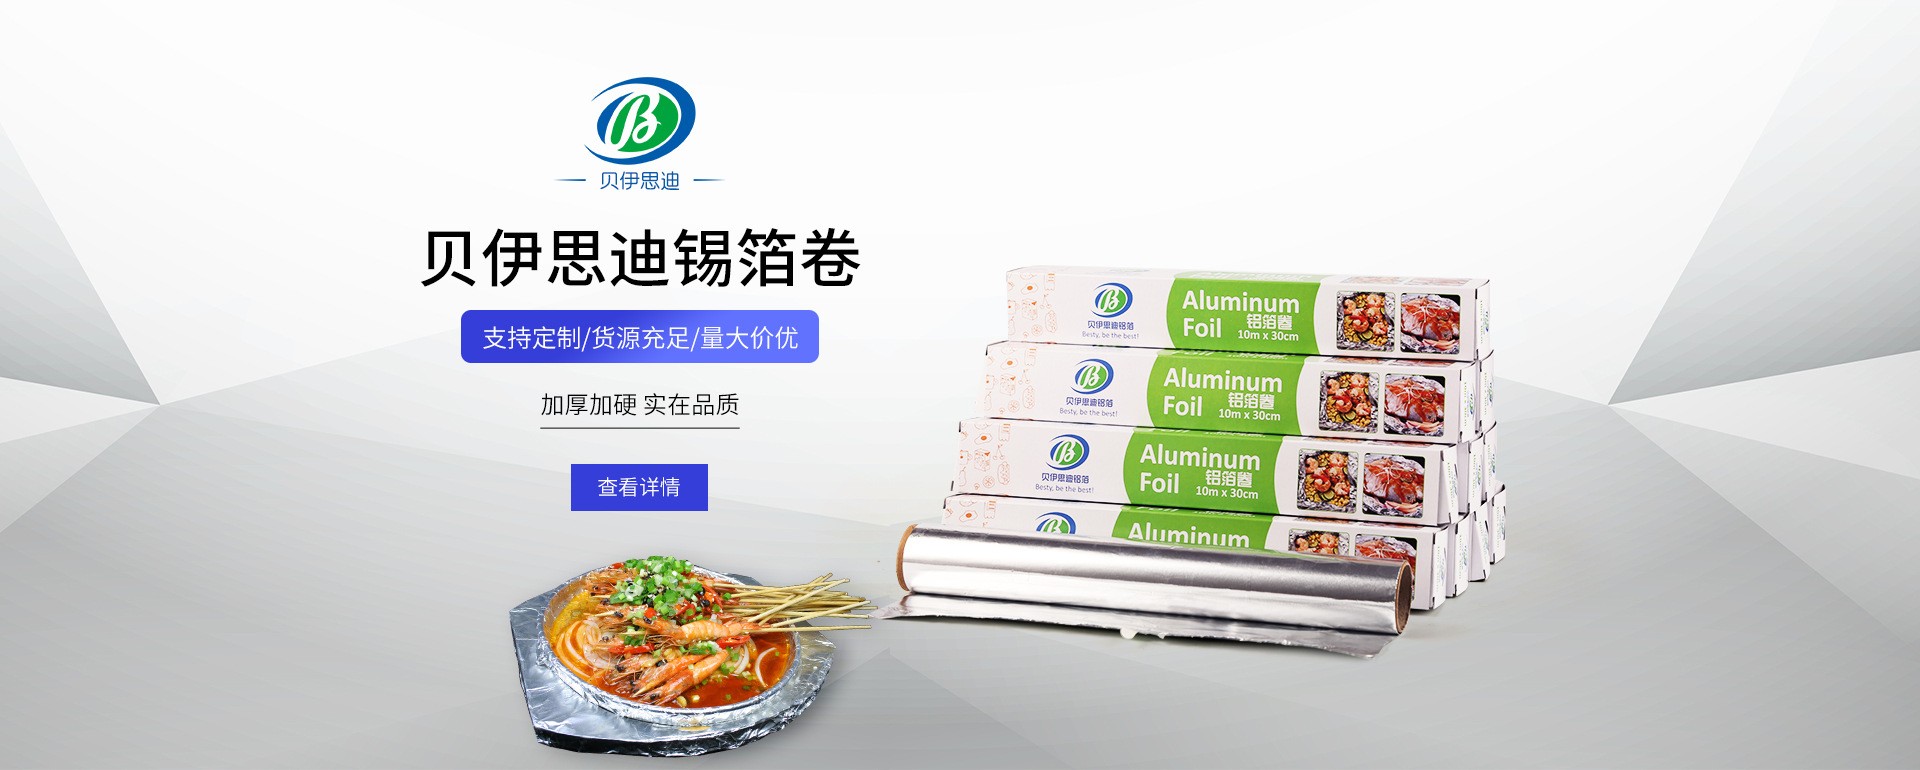 宁波贝伊思迪铝箔制品有限公司邀您相约2023北京酒店餐饮博览